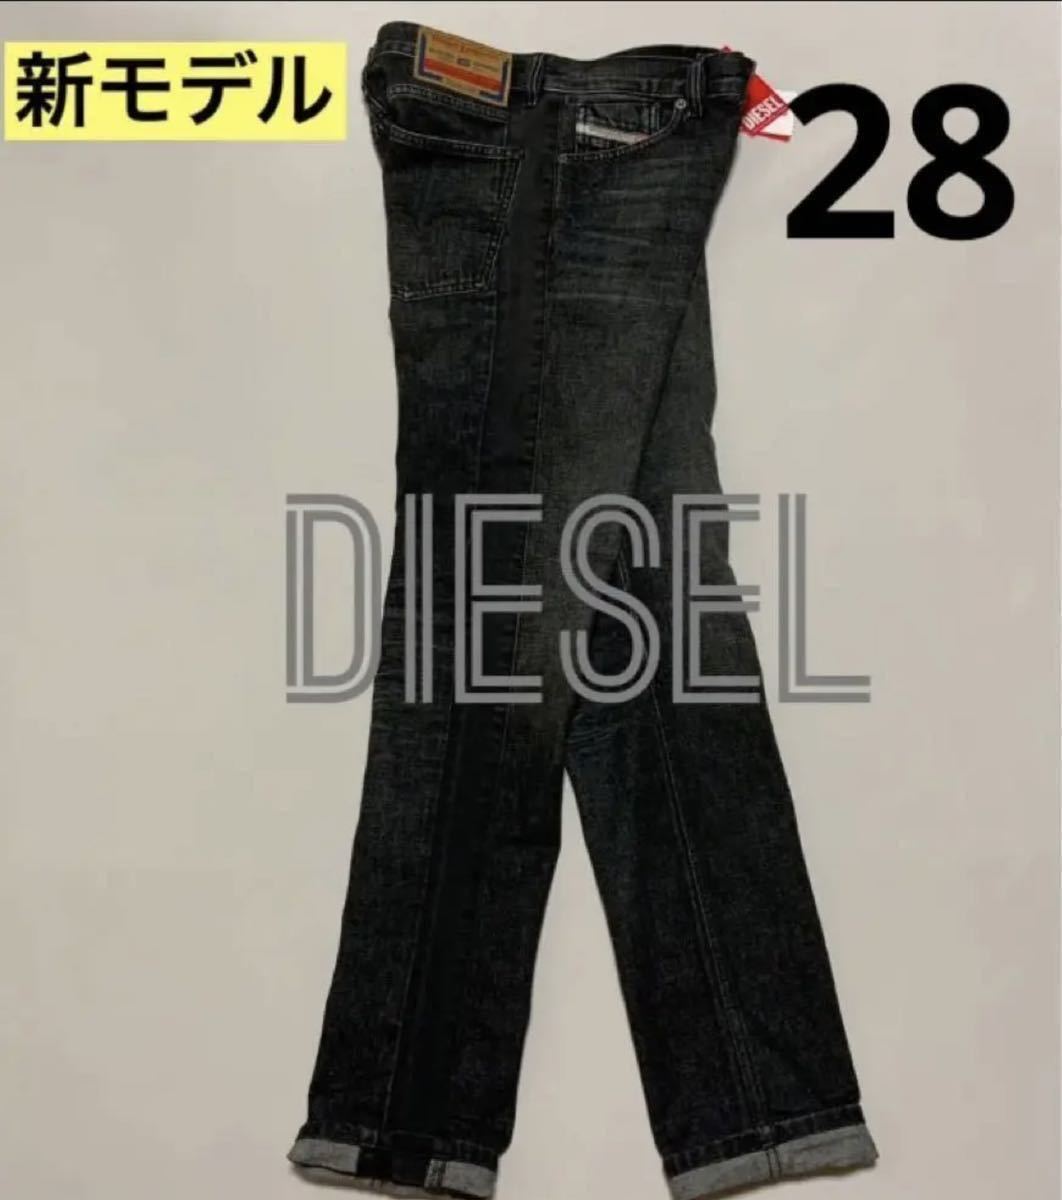 洗練されたDIESEL 1995 007g9 Straight Jeans W28 #DIESELMAKO pfiaa ...